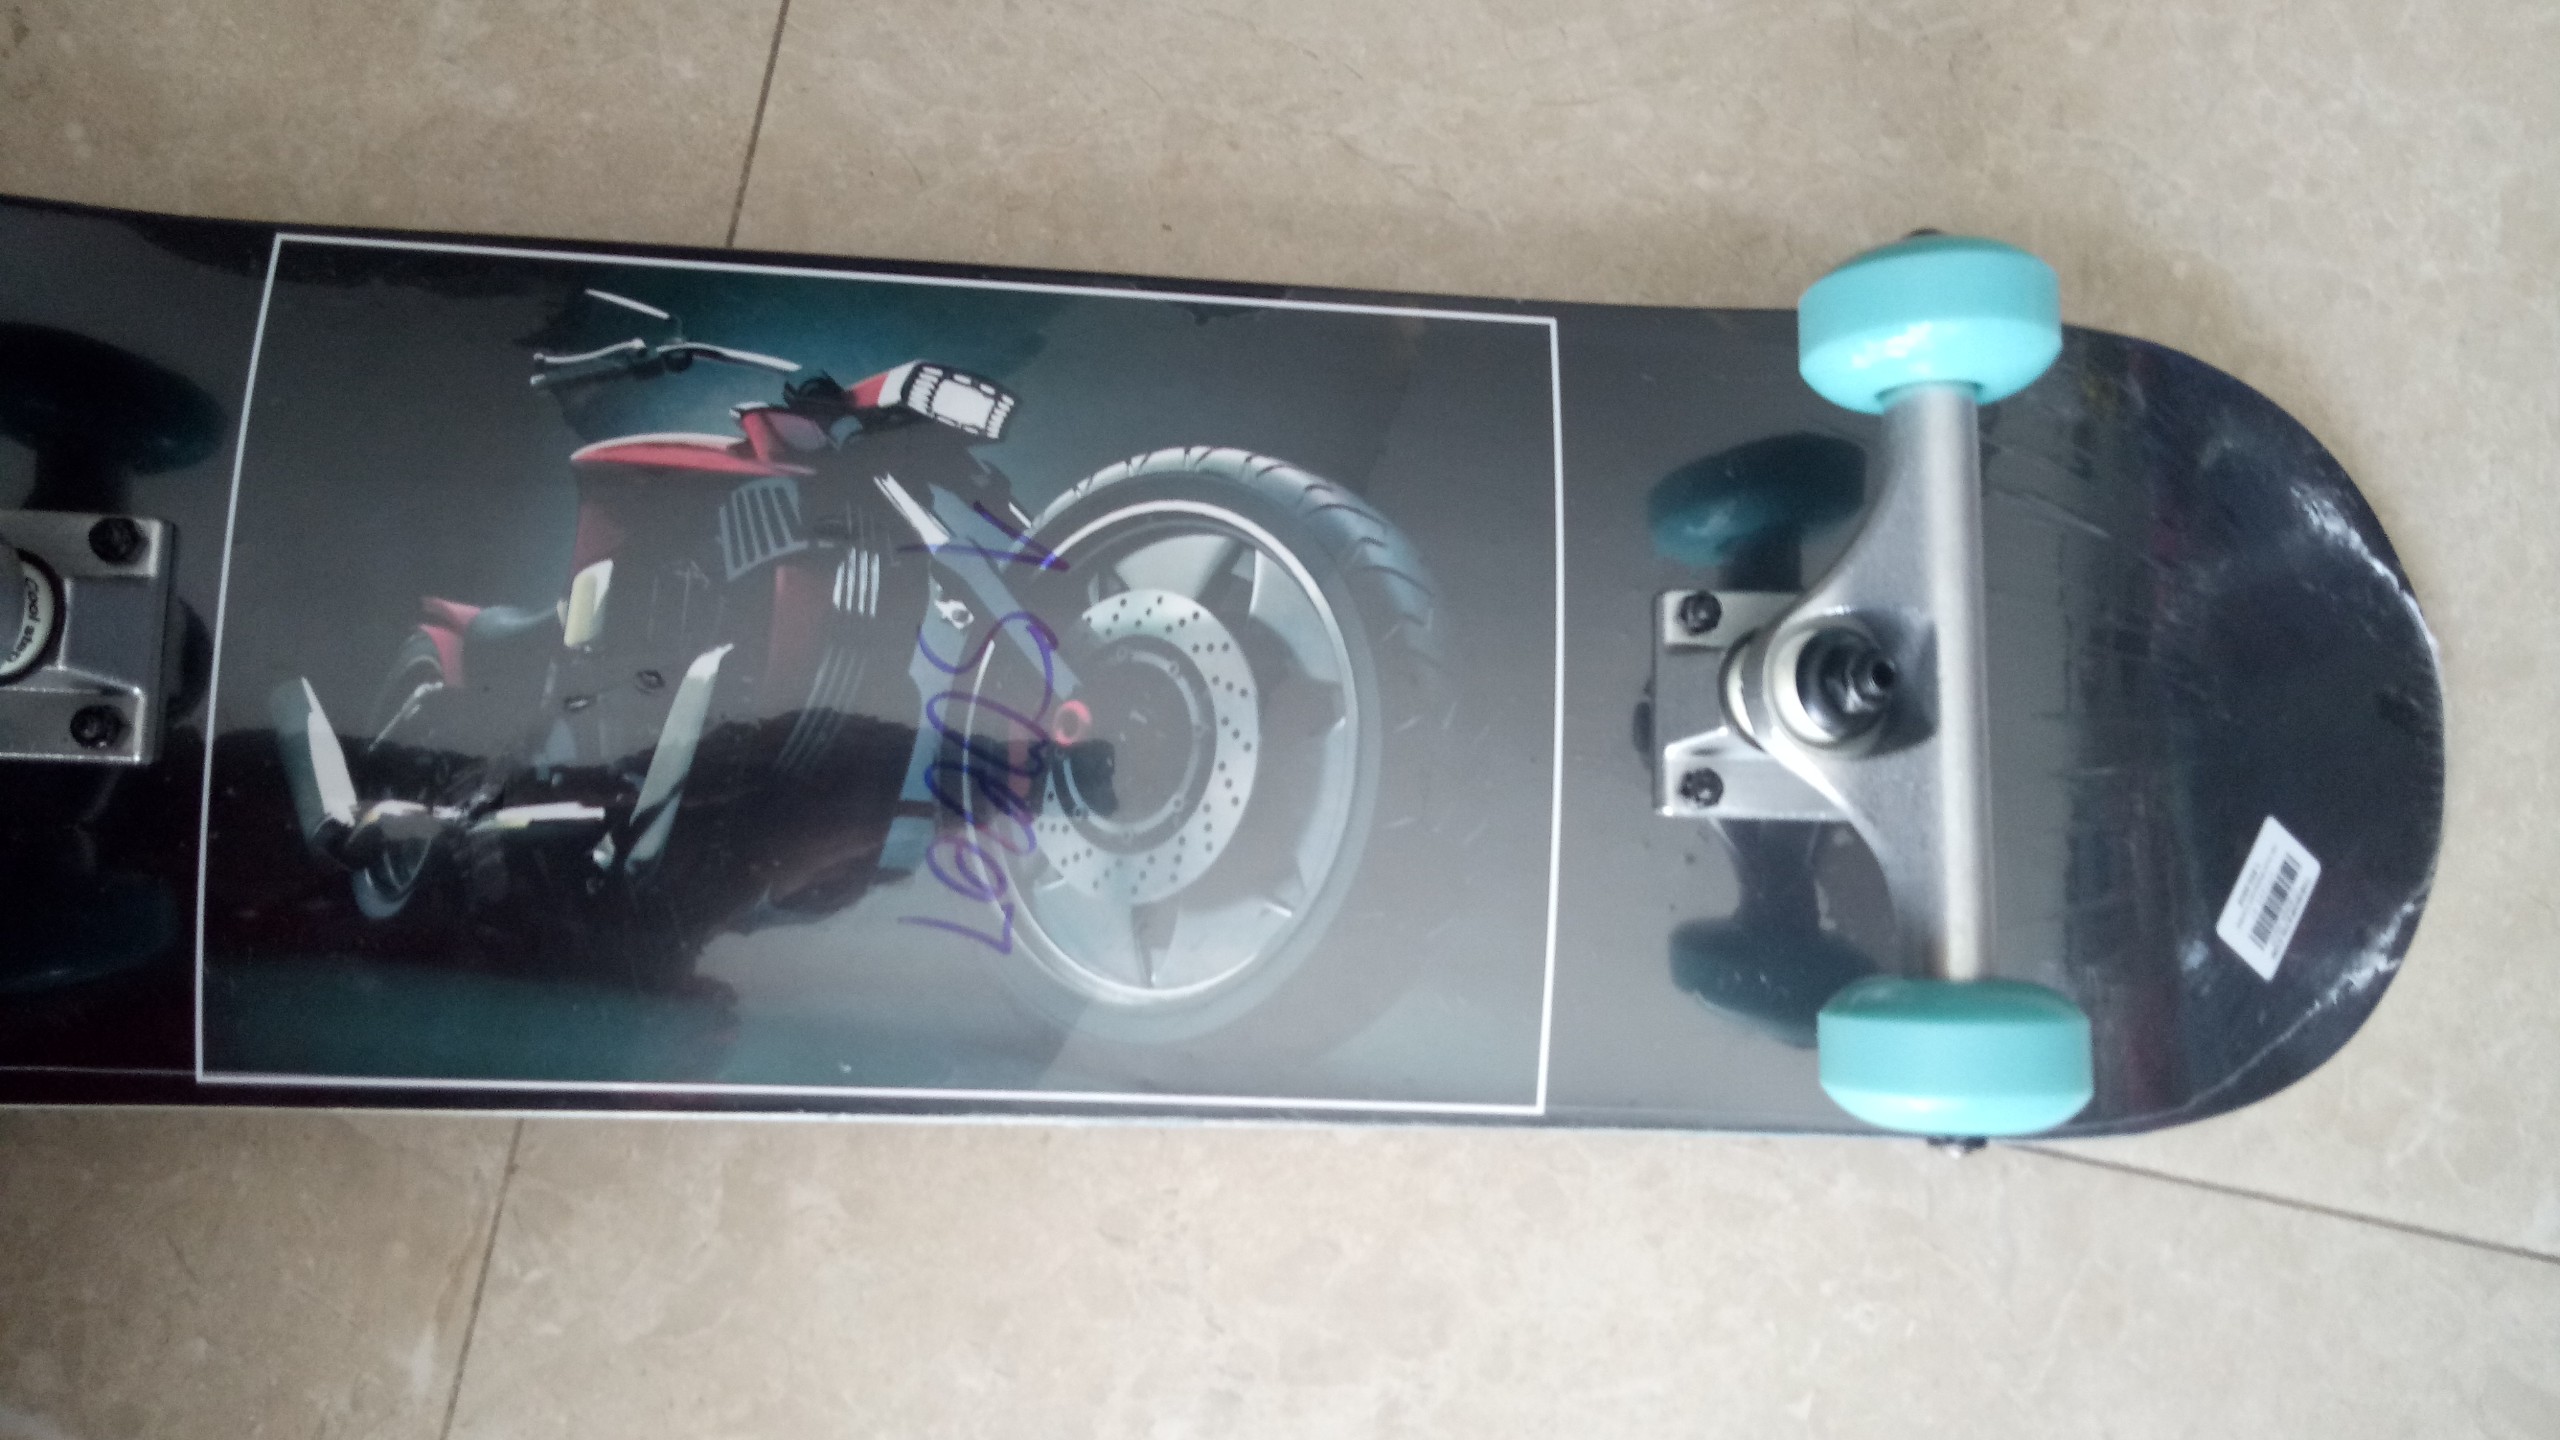 Ván Trượt Skateboard Gỗ 150007 trục hợp kim + gỗ ép 3 lớp bánh xe màu ngẫu nhiên